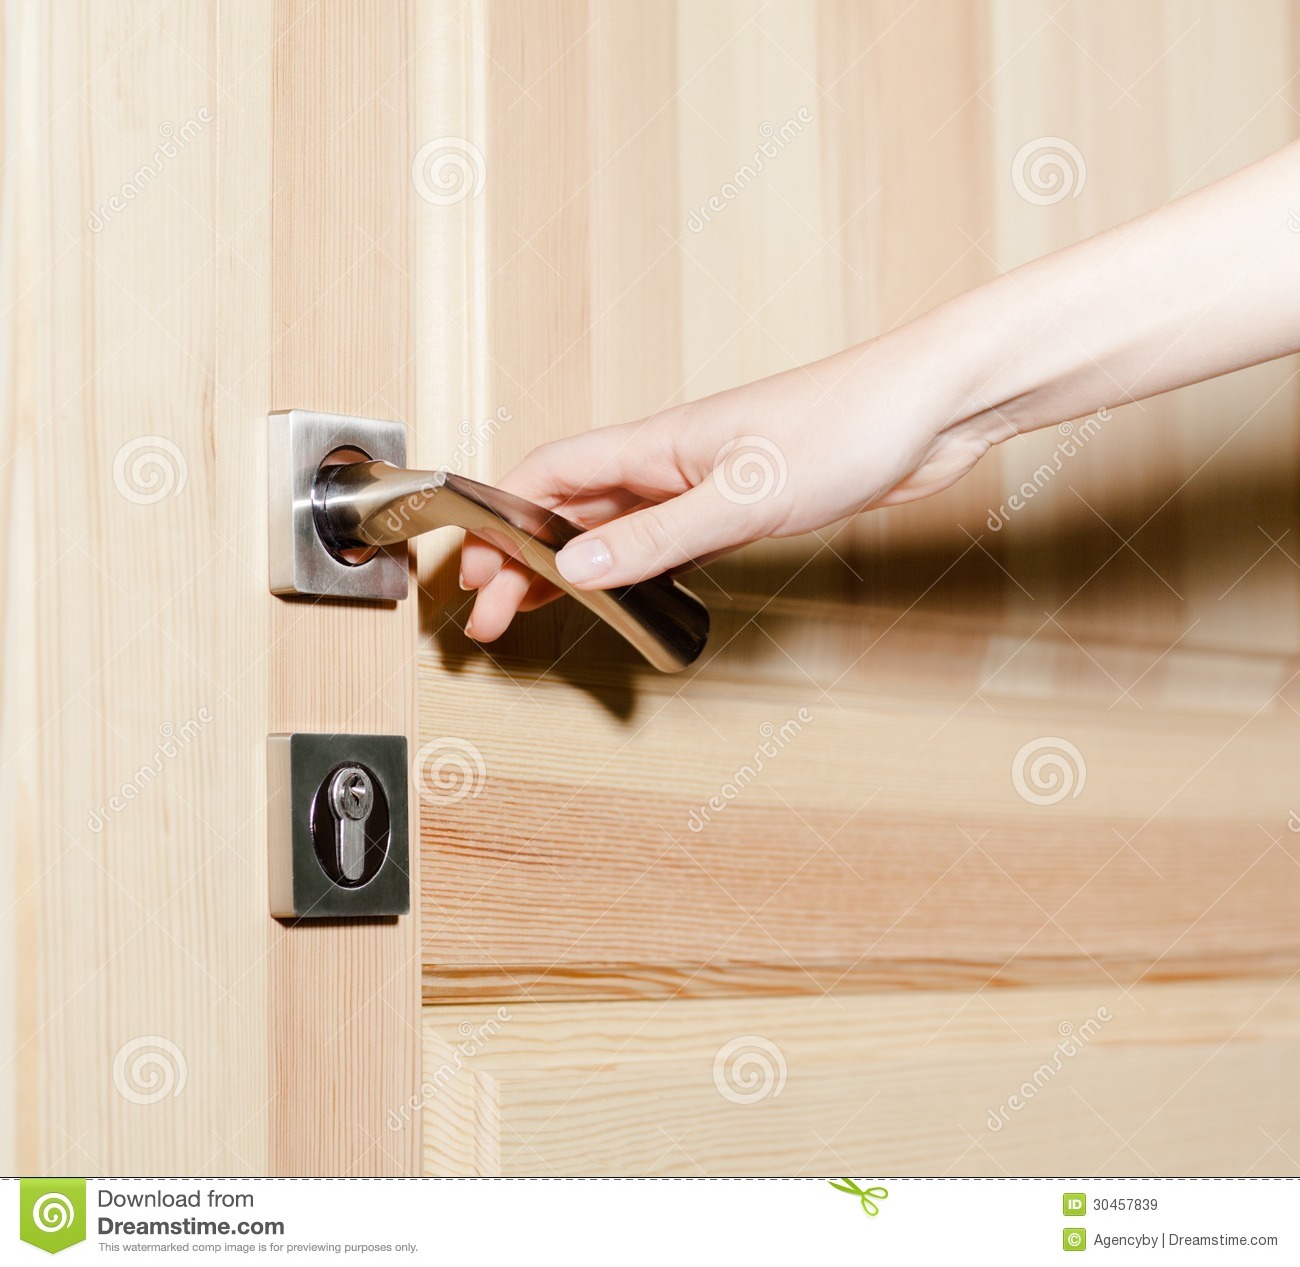 Close Up Of Hand Opening The Door With Door Handle 